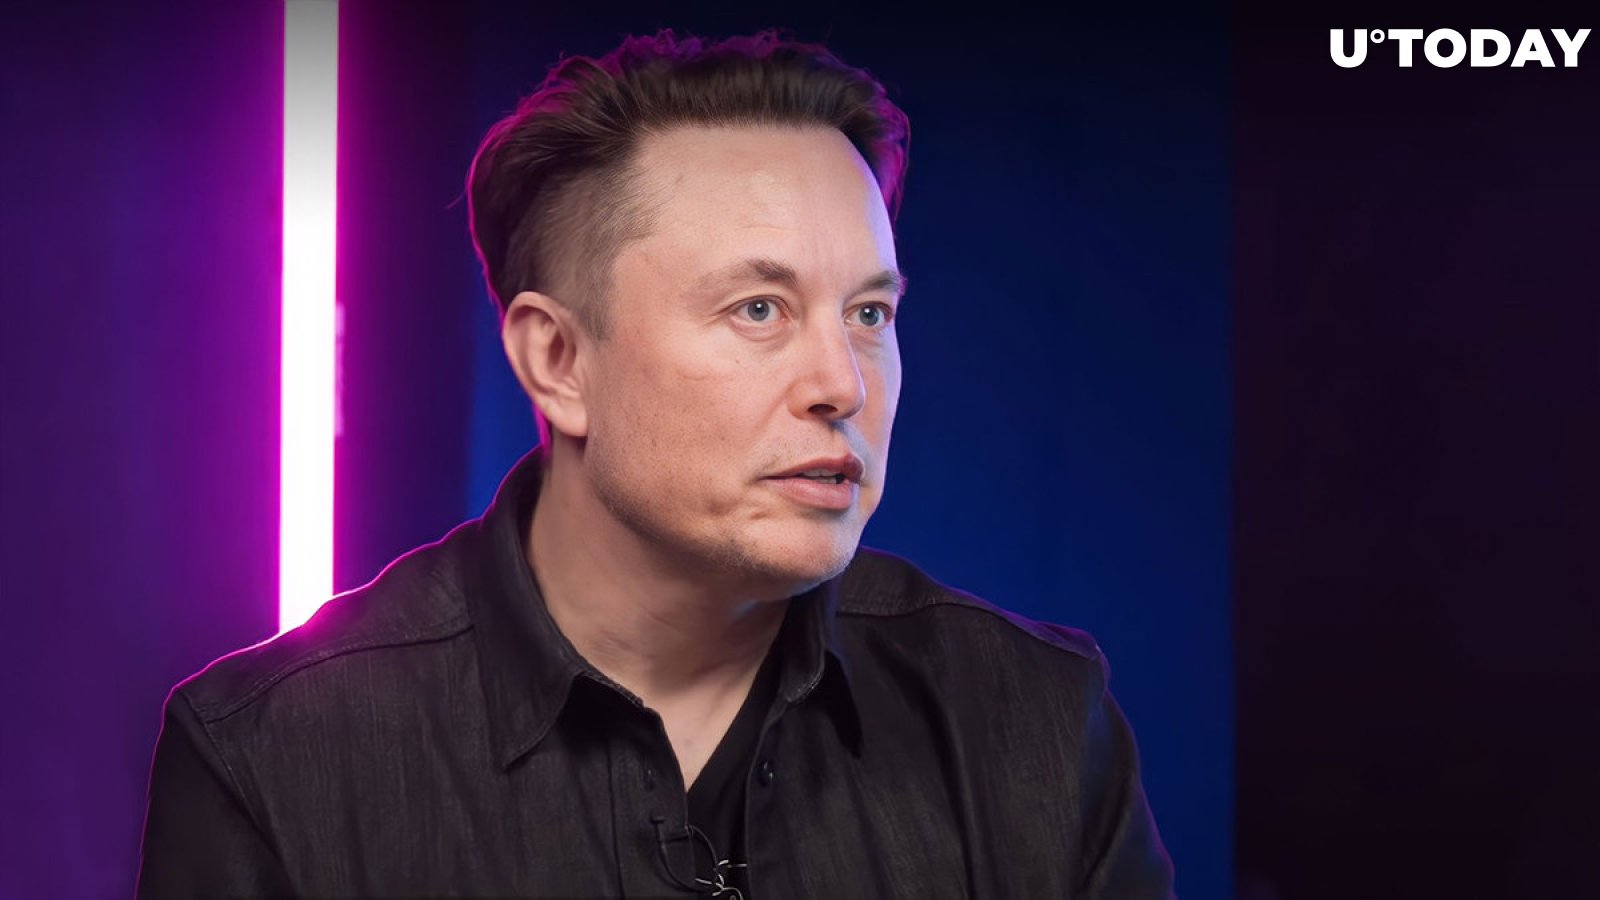  Elon Musk's Cryptic Tweet Raises SHIB, XRP, DOGE Armies' Enthusiasm